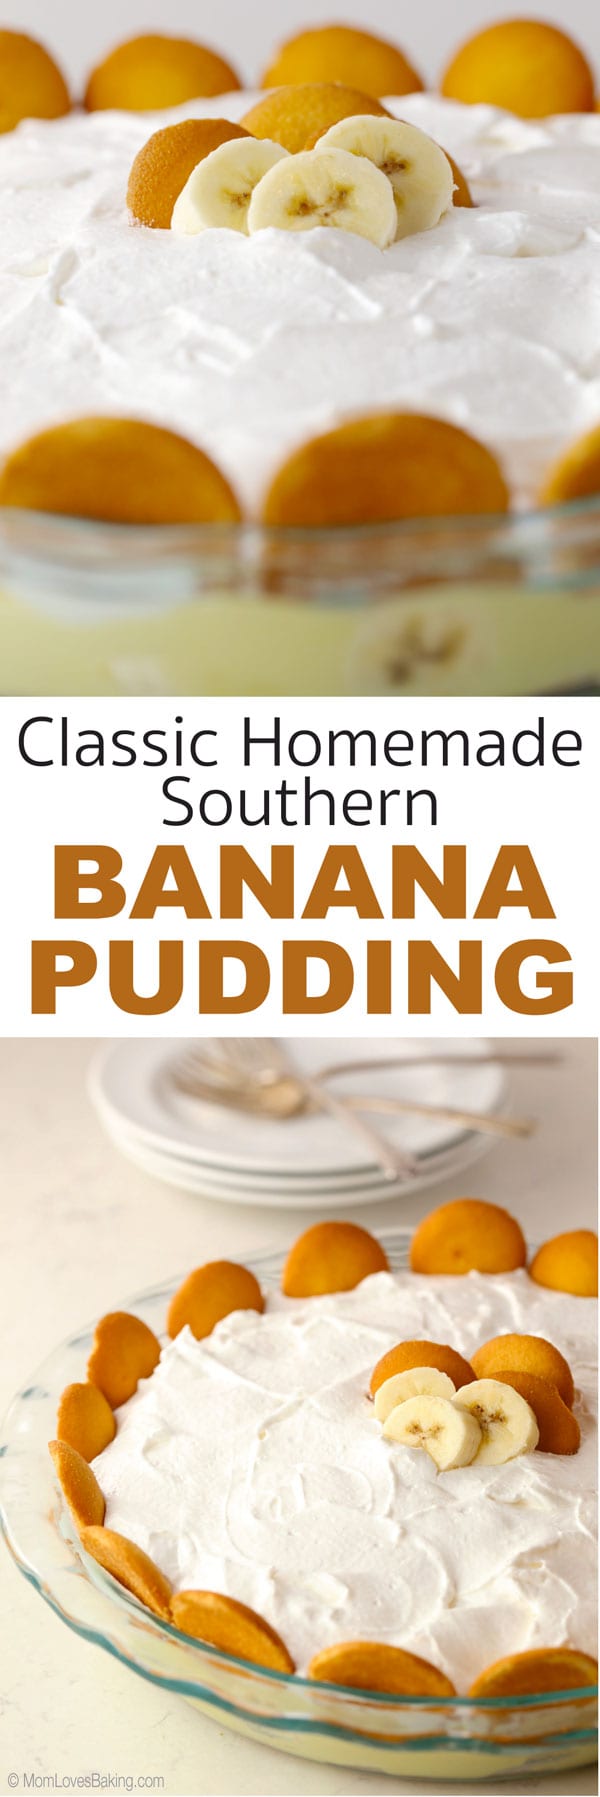 Classic Homemade Southern Banana Pudding